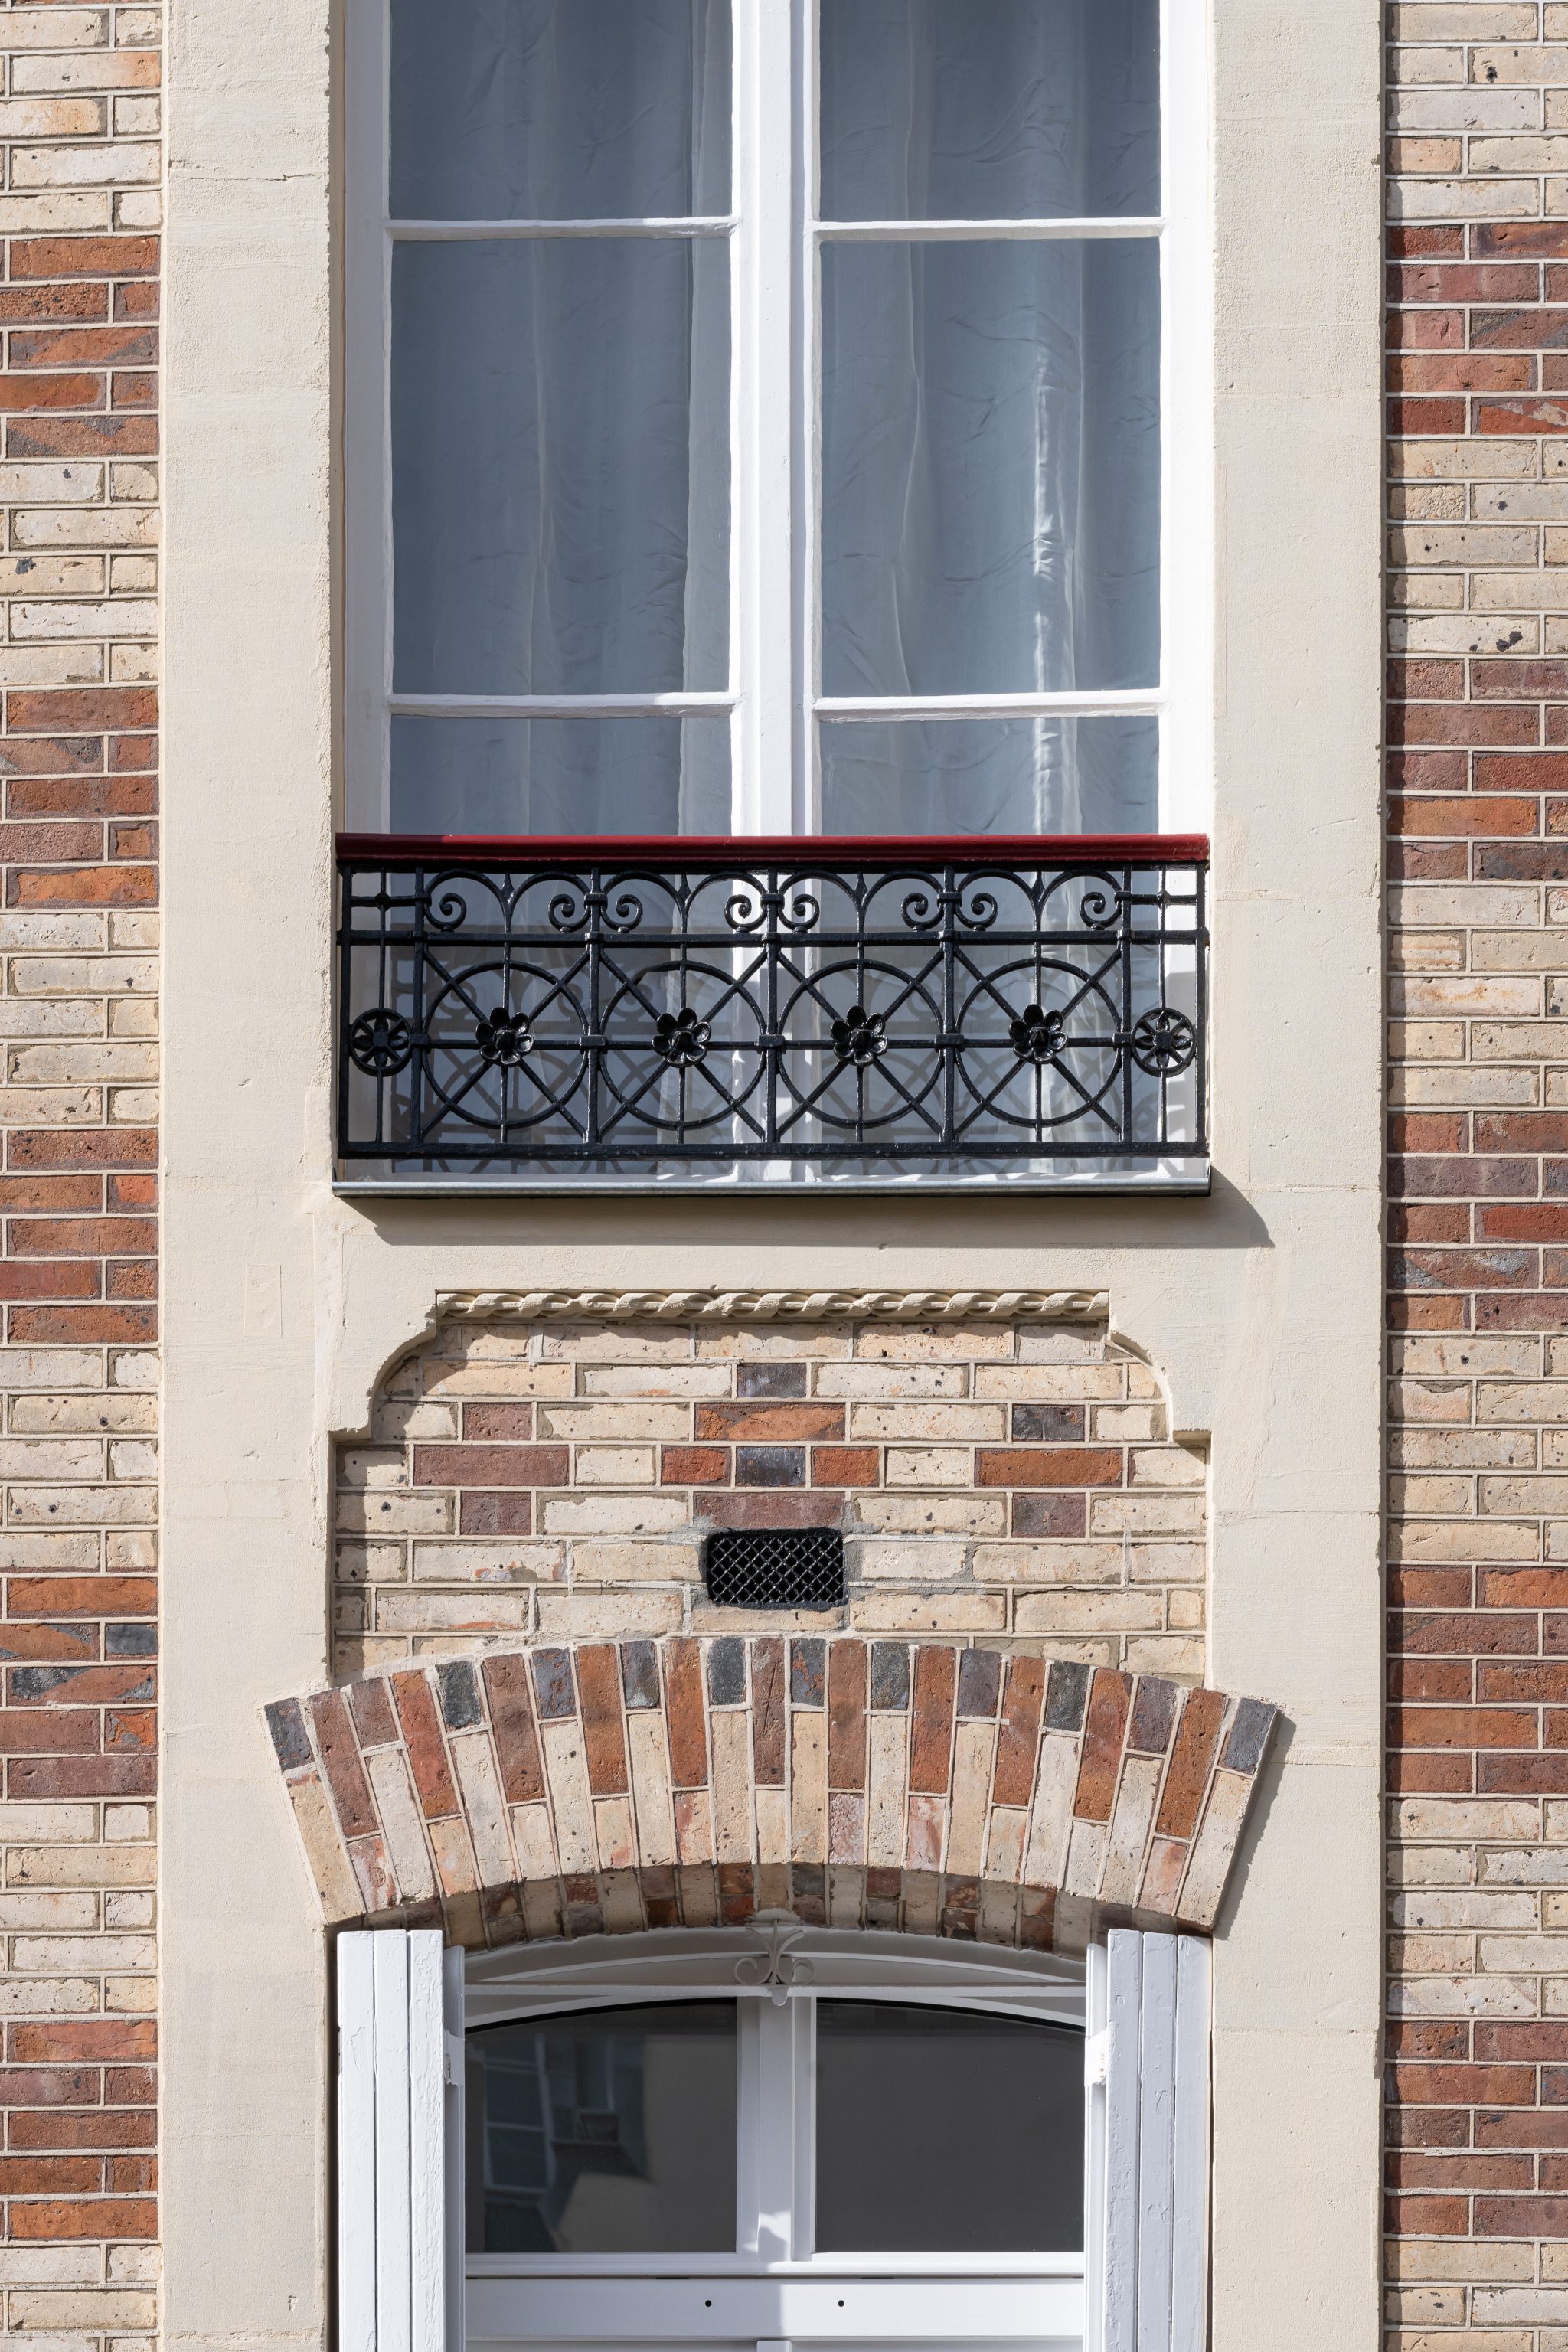 Studio La Boétie Architecte
Paris
Ravalement de façade, rue Milton
© Christophe Caudroy